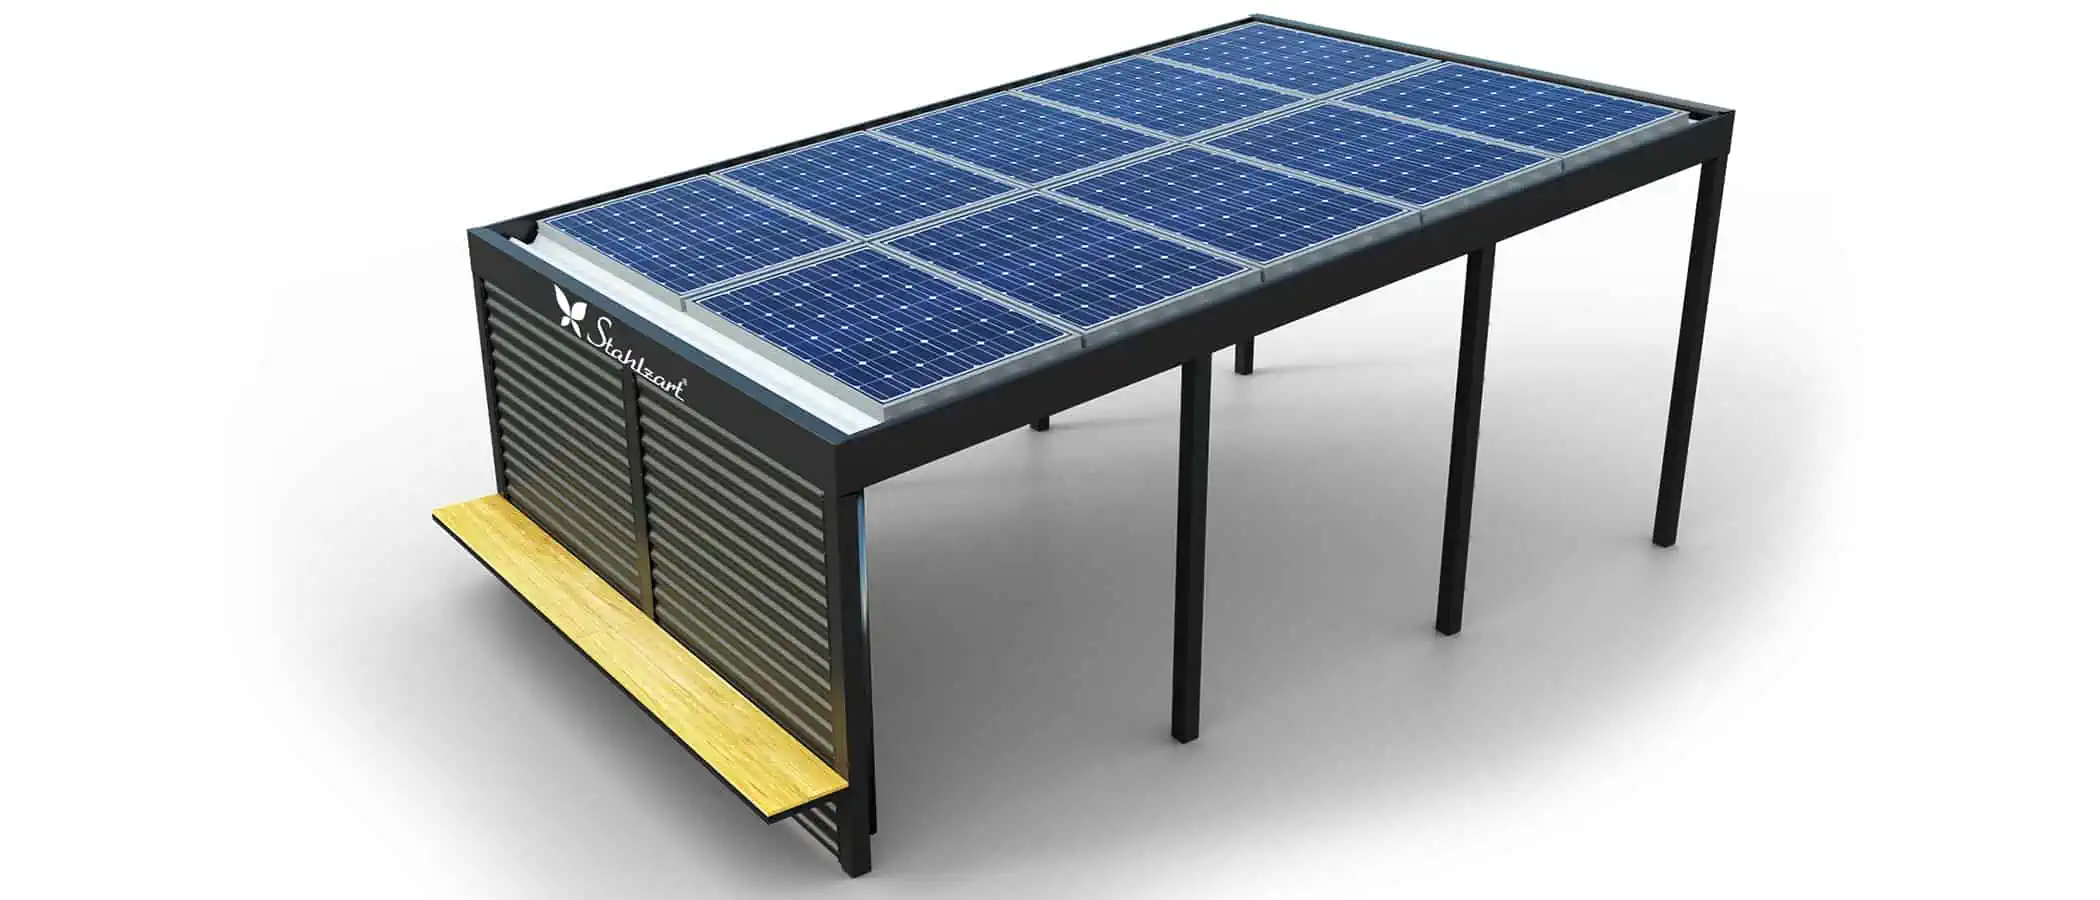 solar-carport-mit-pultdach-carports-solarcarport-pultdach-carportdach-design-strom-angebot-photovoltaikanlage-module-solardach-dachflaeche-metall-stahl-mit-sitzbank-holz-modern-stahlzart